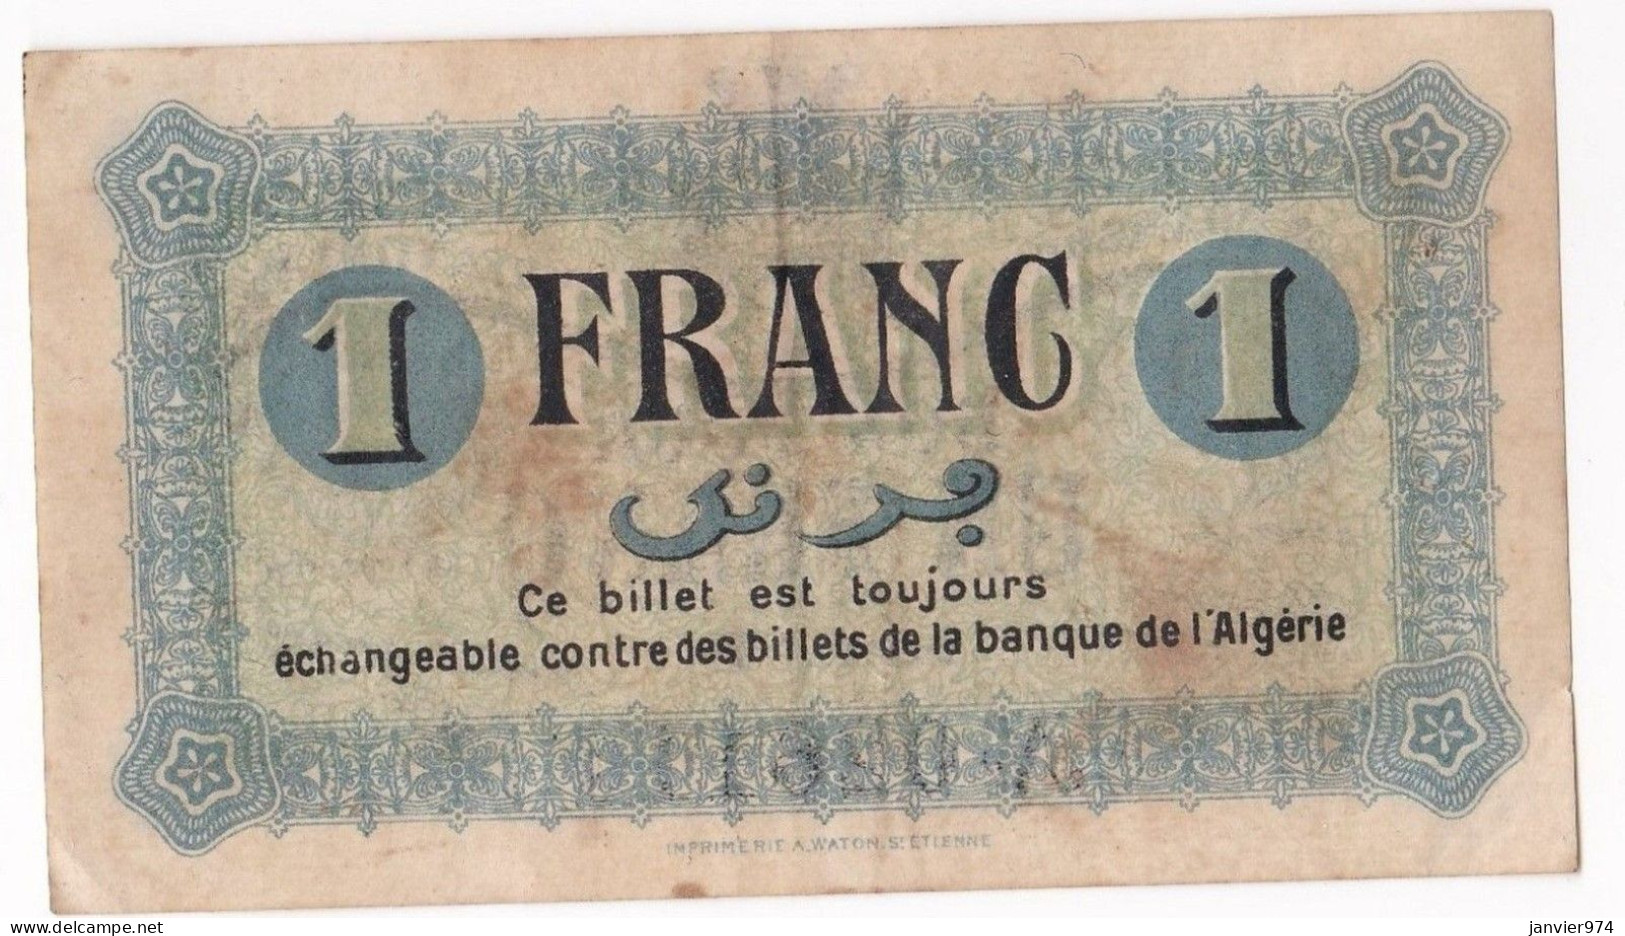 Algerie Constantine .Chambre De Commerce. 1 Franc 1 Mai 1945 Serie B N° 026110, Billet Colonial Circulé - Algérie